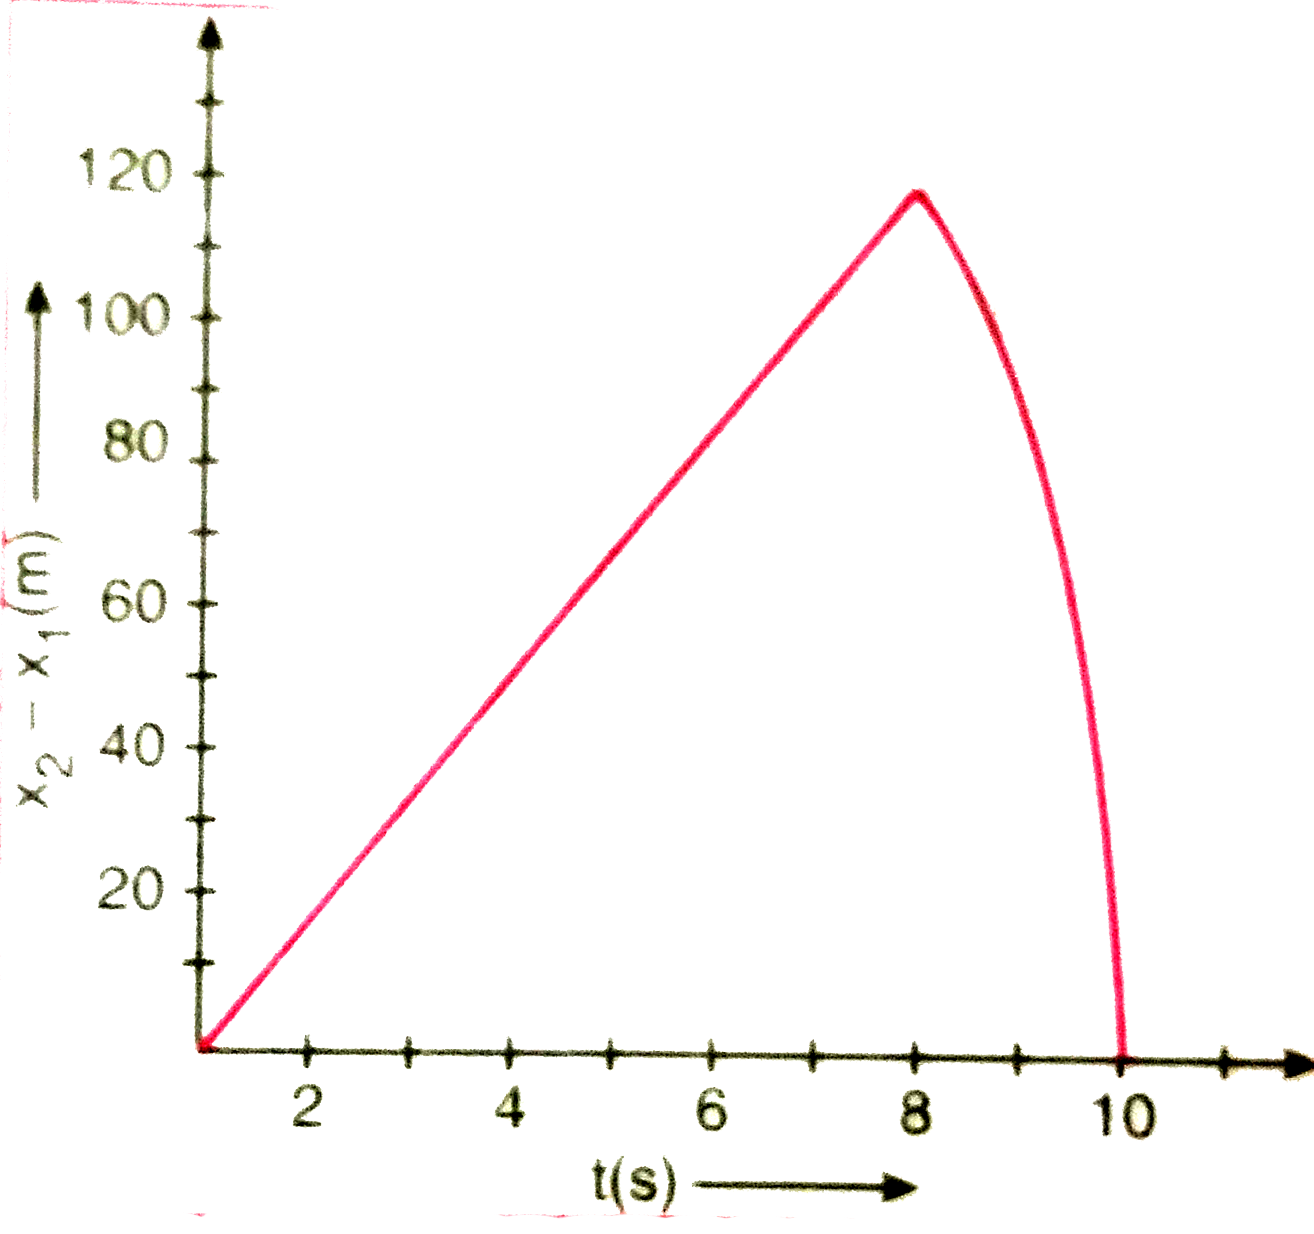 किसी 200 मीटर ऊँची खड़ी चट्टान के किनारे से दो पत्थरो को एक साथ ऊपर की ओर 15 मीटर/सेकण्ड तथा 30 मीटर/सेकण्ड की प्रारंभिक चाल से फेंका जाता है । इसका सत्यापन कीजिए कि नीचे दिखाया गया ग्राफ (चित्र 3.59) पहले पत्थर के सापेक्ष दूसरे पत्थर की  आपेक्षिक स्थिति का समय के साथ परिवर्तन को प्रदर्शित करता है वायु के प्रतिरोध को नगण्य मानिए और यह मानिए कि जमीन से टकराने के बाद पत्थर ऊपर की ओर उछलते नहीं । मान लीजिए g=10